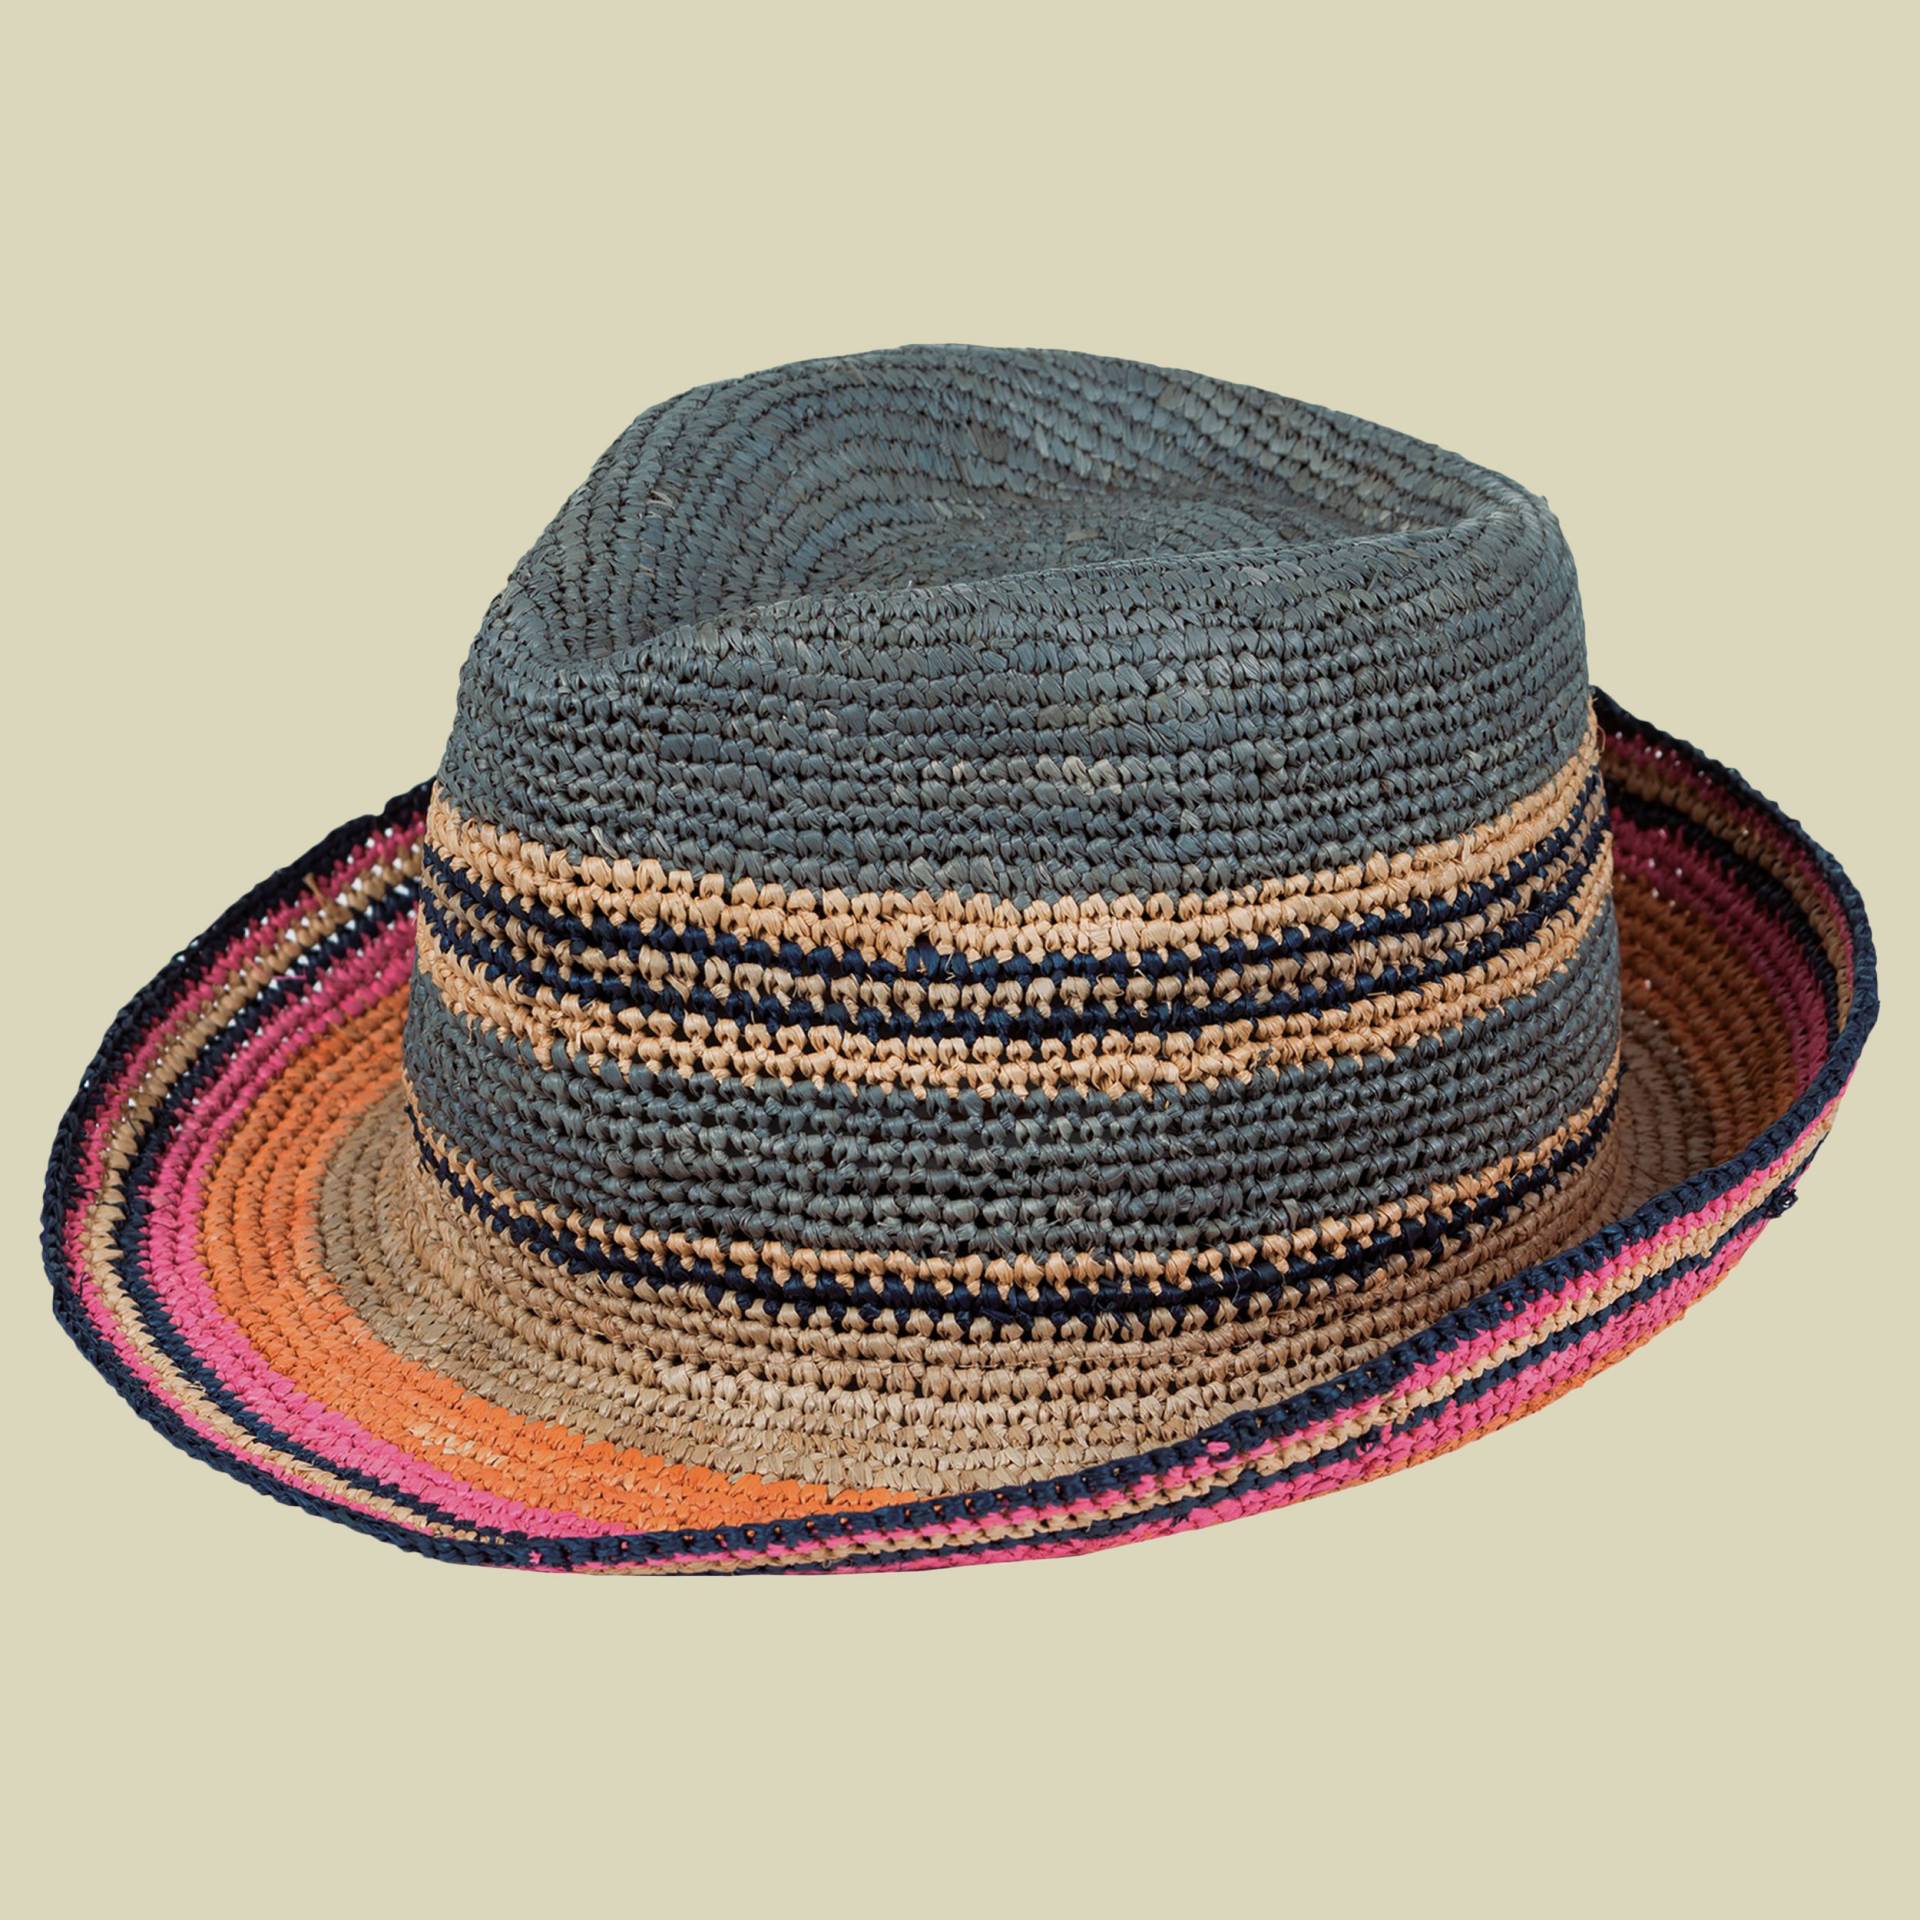 Havanna/Trilby Hat Größe S-M Farbe colorful mix von Capo